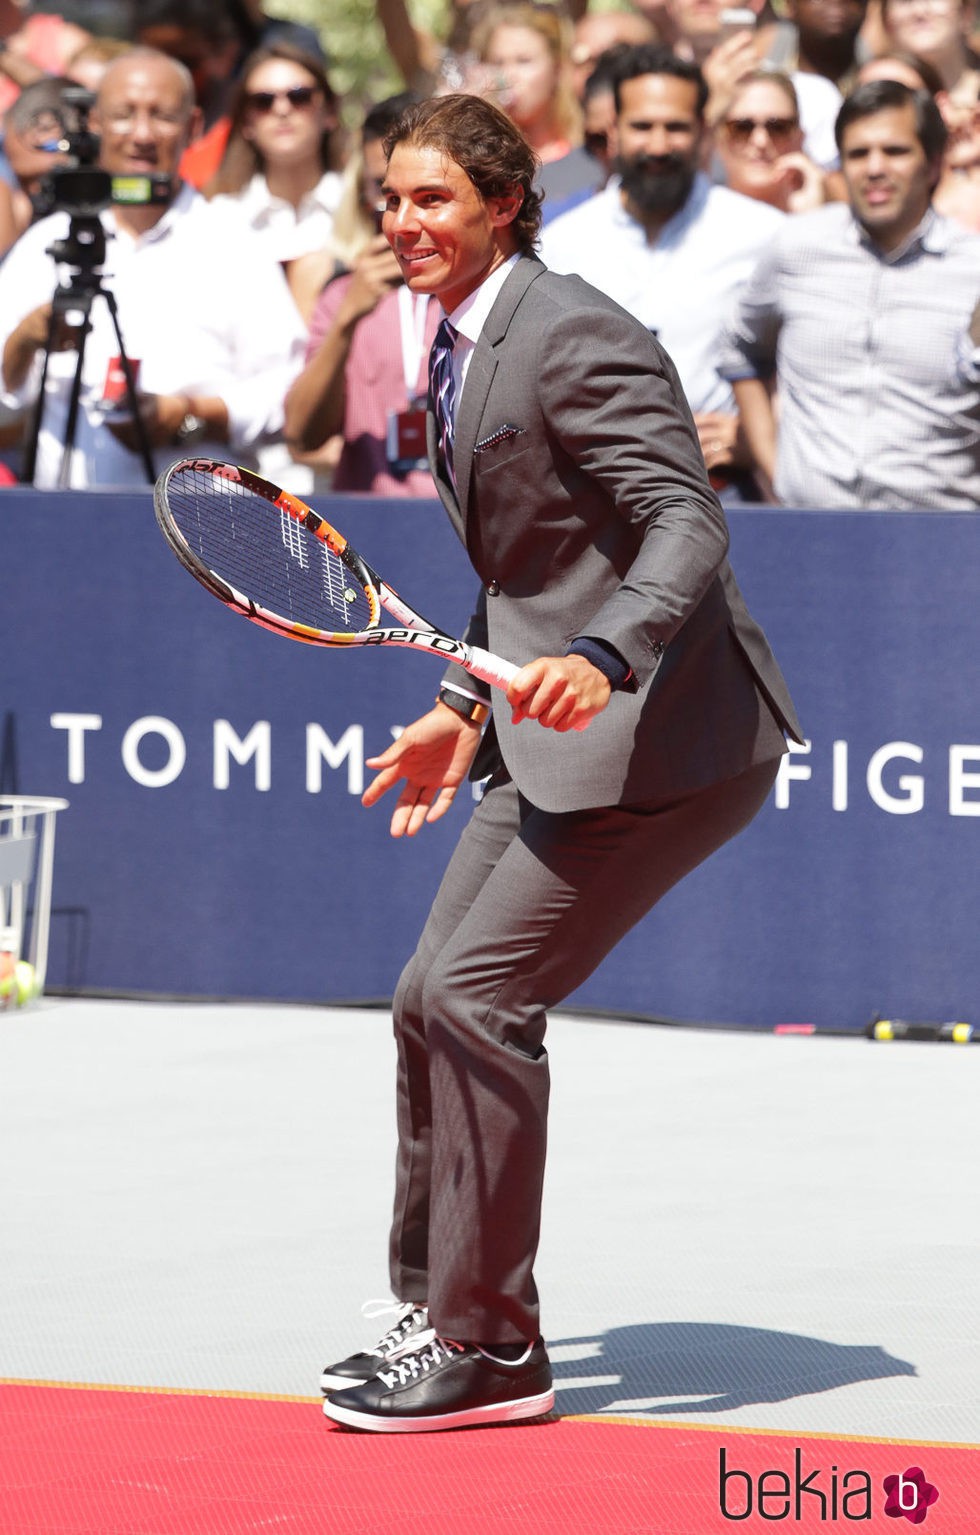 Rafa Nadal disputa un partido con traje durante un evento en Nueva York